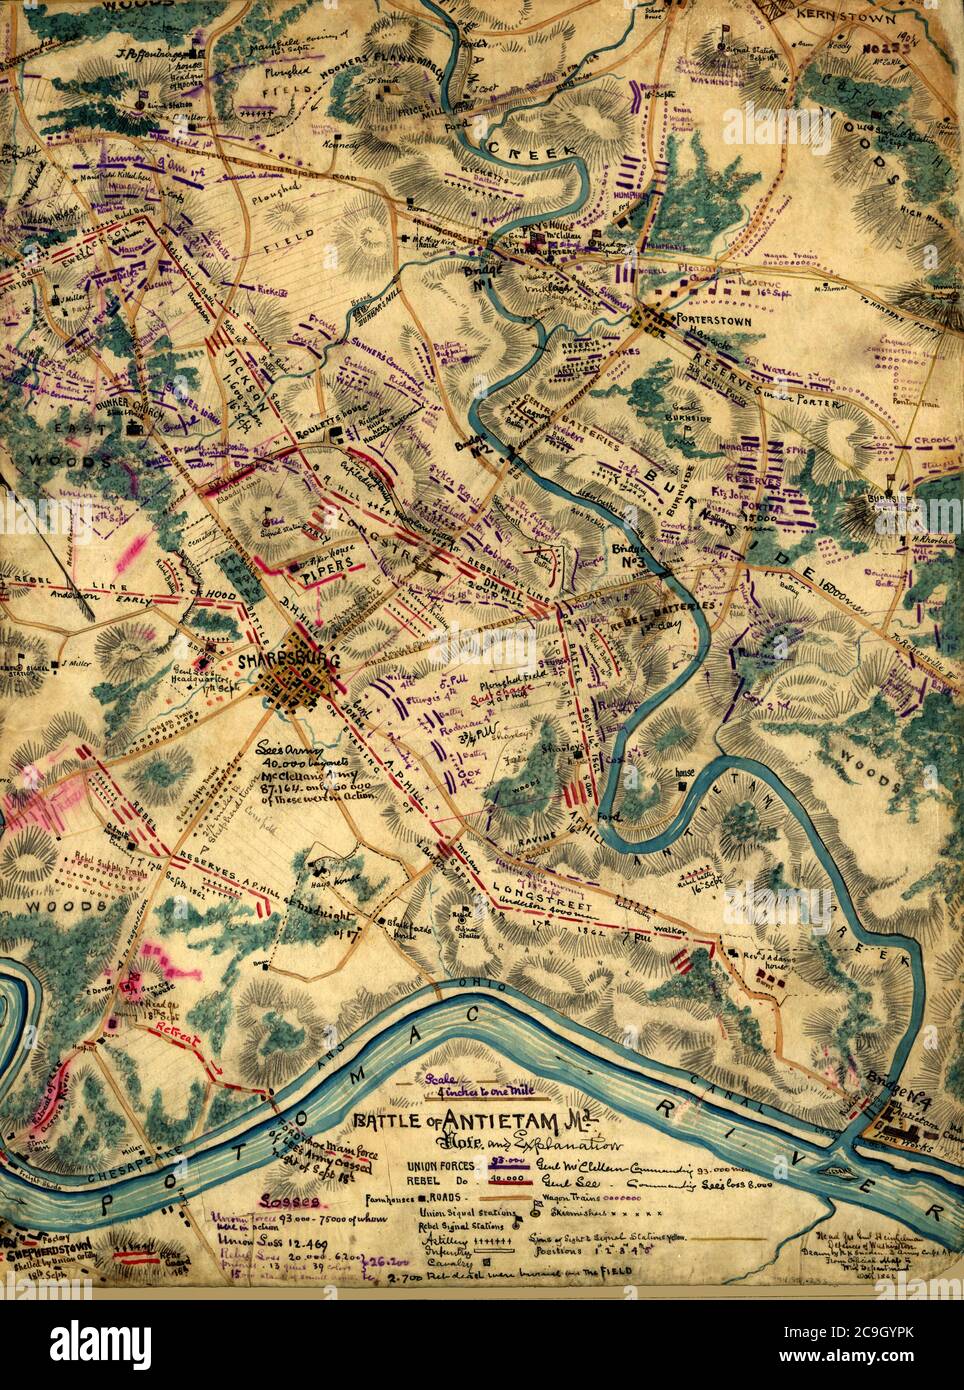 Bataille d'Antietam, Maryland - Guerre de Sécession - sur cette carte extrêmement détaillée, Sneden indique l'emplacement des routes, des ponts, du canal de Chesapeake et de l'Ohio, des maisons, des granges, des champs labourés et de l'usine de fer d'Antietam. Les stations de signaux Union et Confederate sont également mentionnées. La ligne de bataille est située à l'est de la ville de Sharpsburg le 16 septembre; englobant la ville le 17 septembre (après la bataille réelle); et à l'ouest de la ville le 18 septembre, lorsque les troupes confédérées de Lee se sont retirées à travers le Potomac en direction de Sheperdstown, Virginie occidentale Banque D'Images